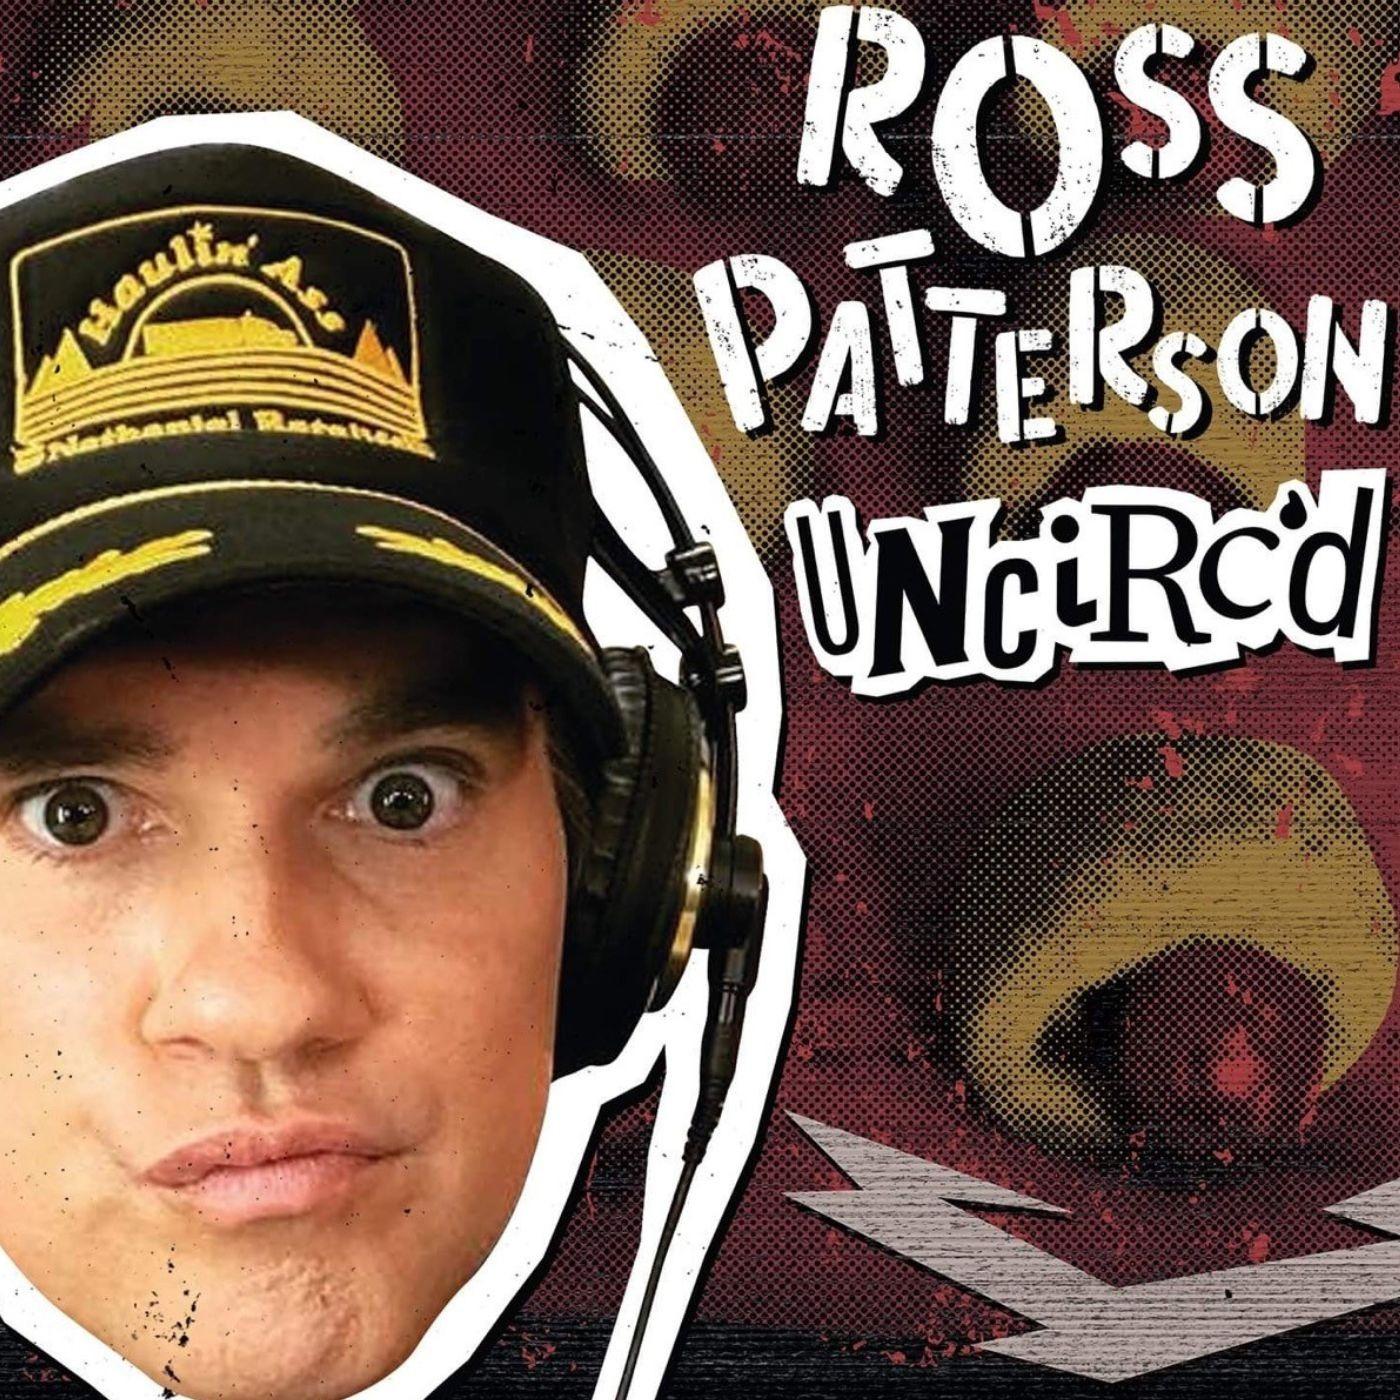 Ross Patterson Uncirc'd